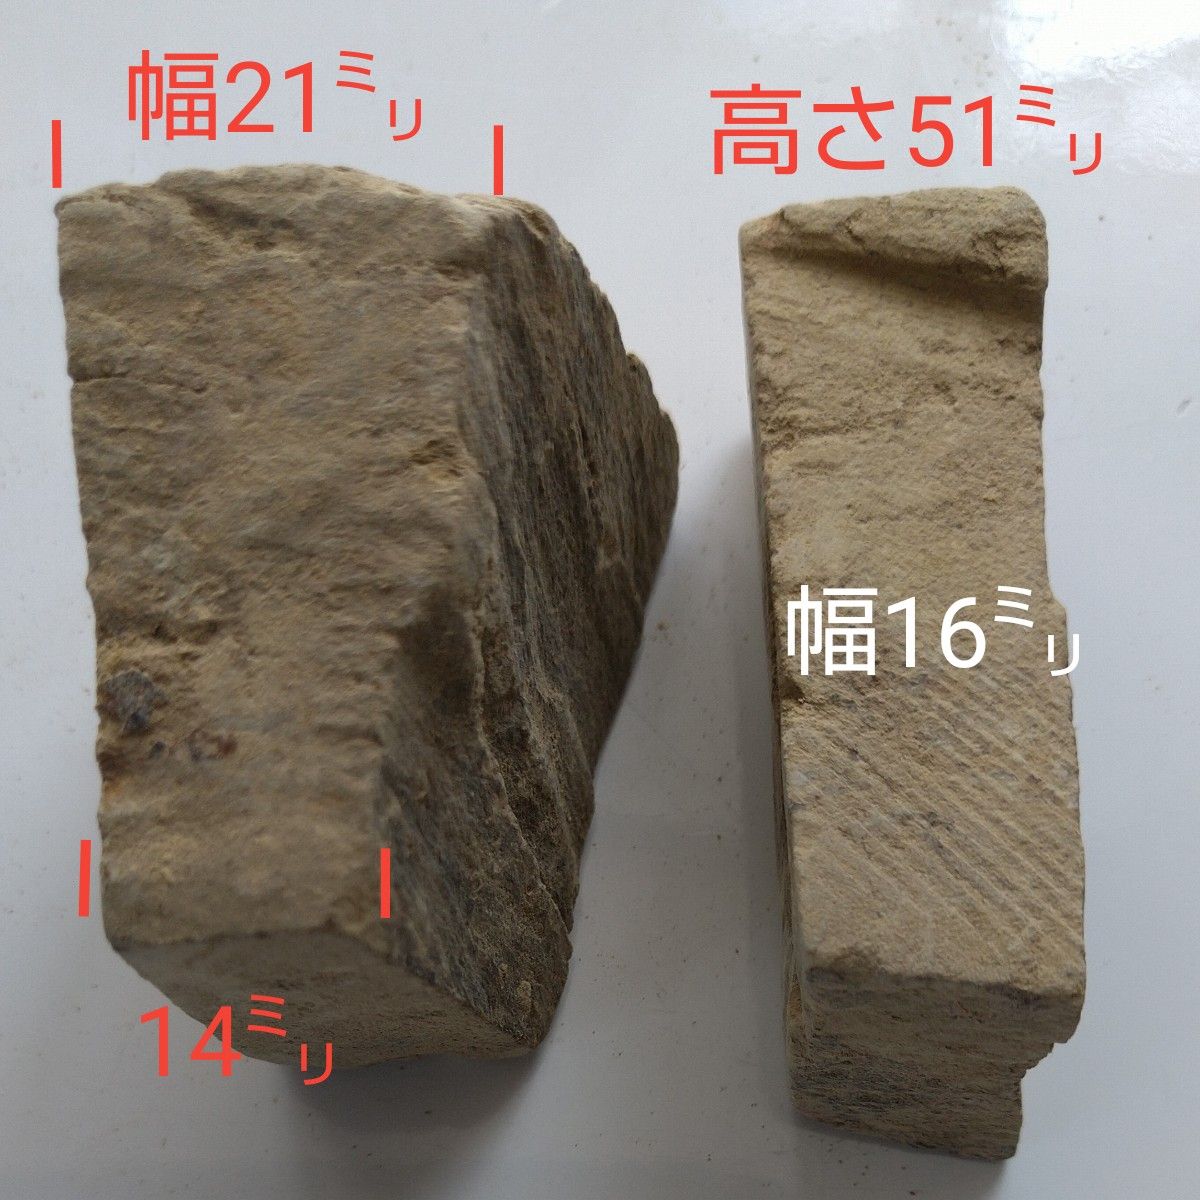 天然硯砥石 型番25807、 2個